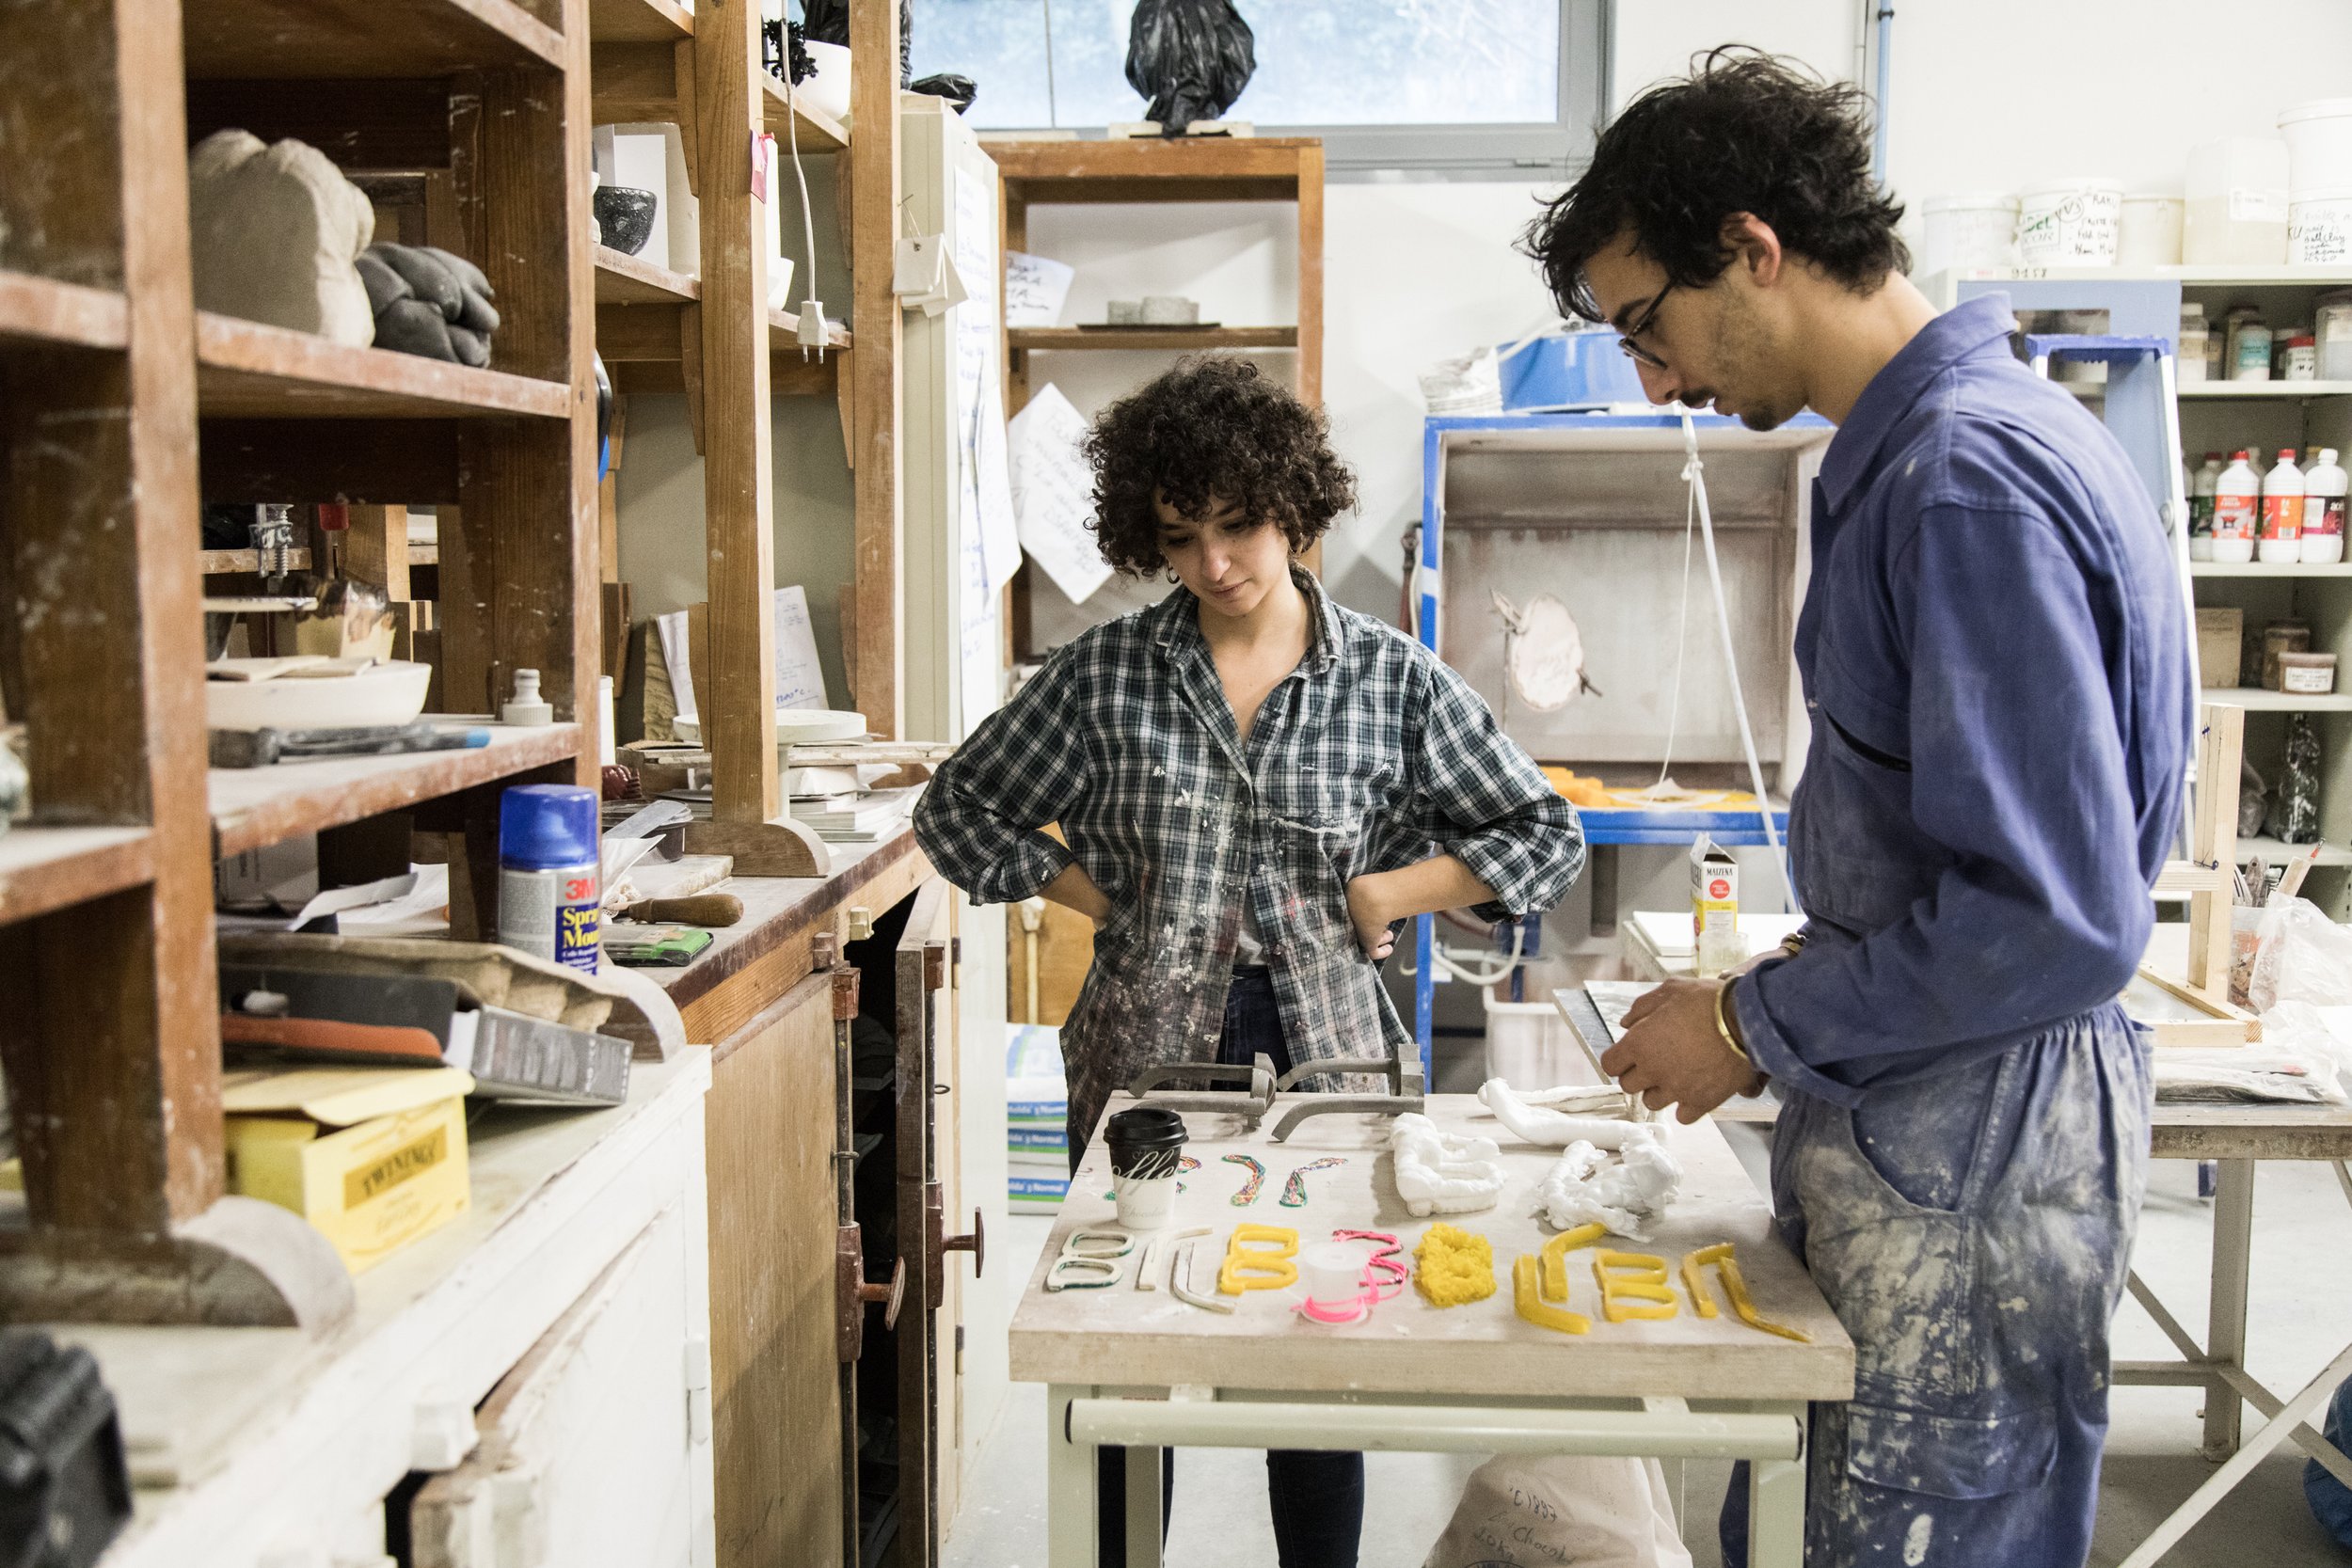  Atelier Céramique de l’Ensaama. 17 janvier 2018. Marina et Viktor regardent leur travail.  